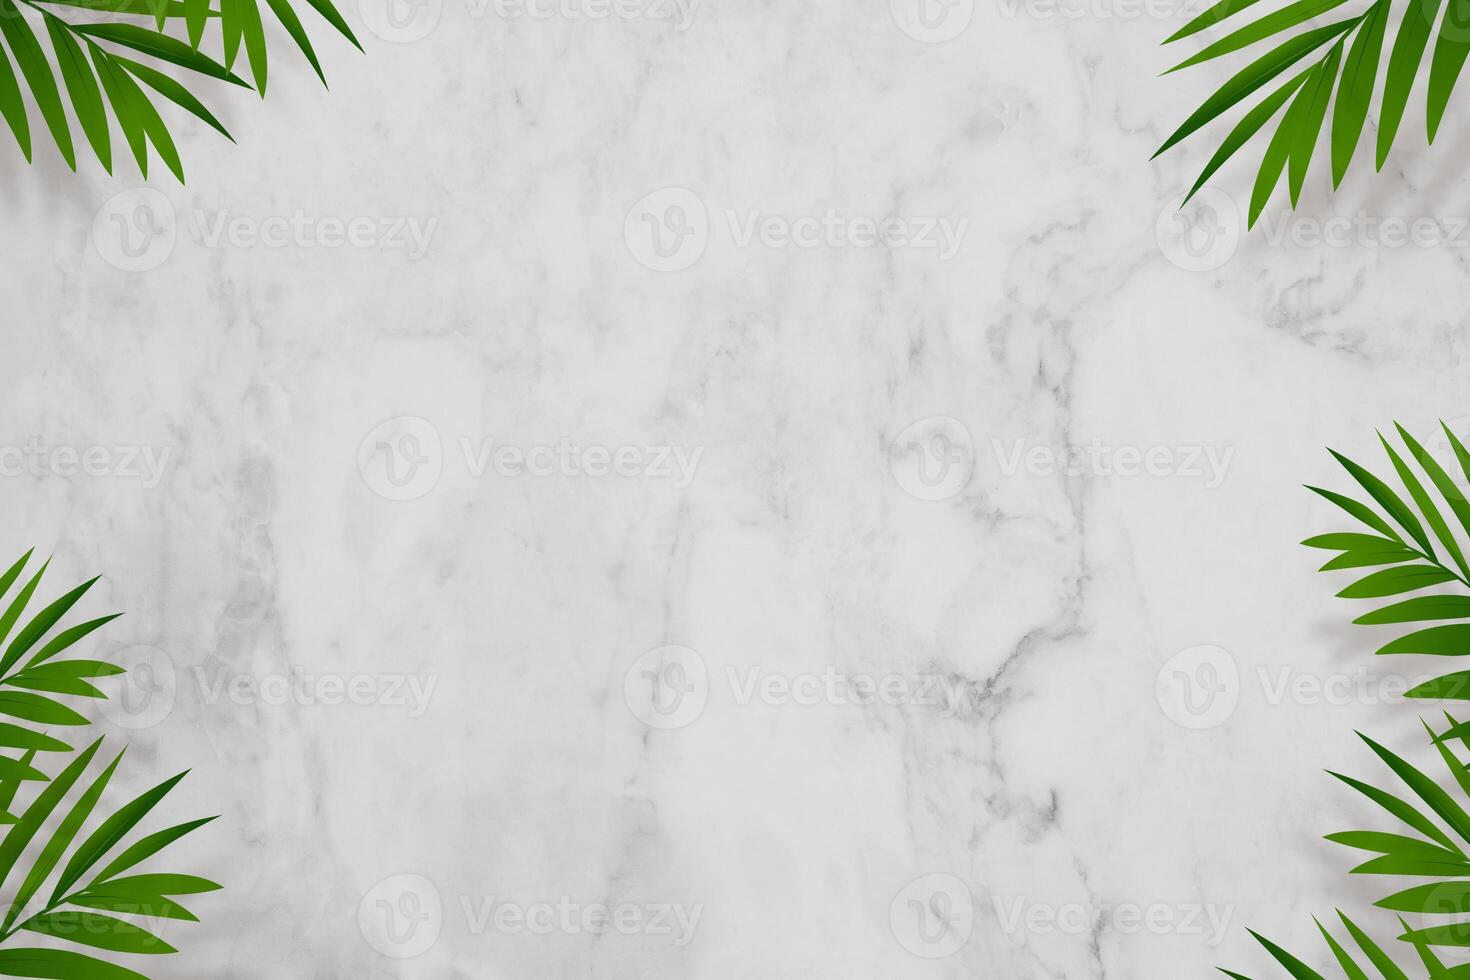 mármol fondo,palma hojas y sombra frontera marco con Copiar espacio para vacaciones de verano pancarta,vacío gris blanco naturaleza granito textura o cerámico mostrador Coco hoja para producto presente foto